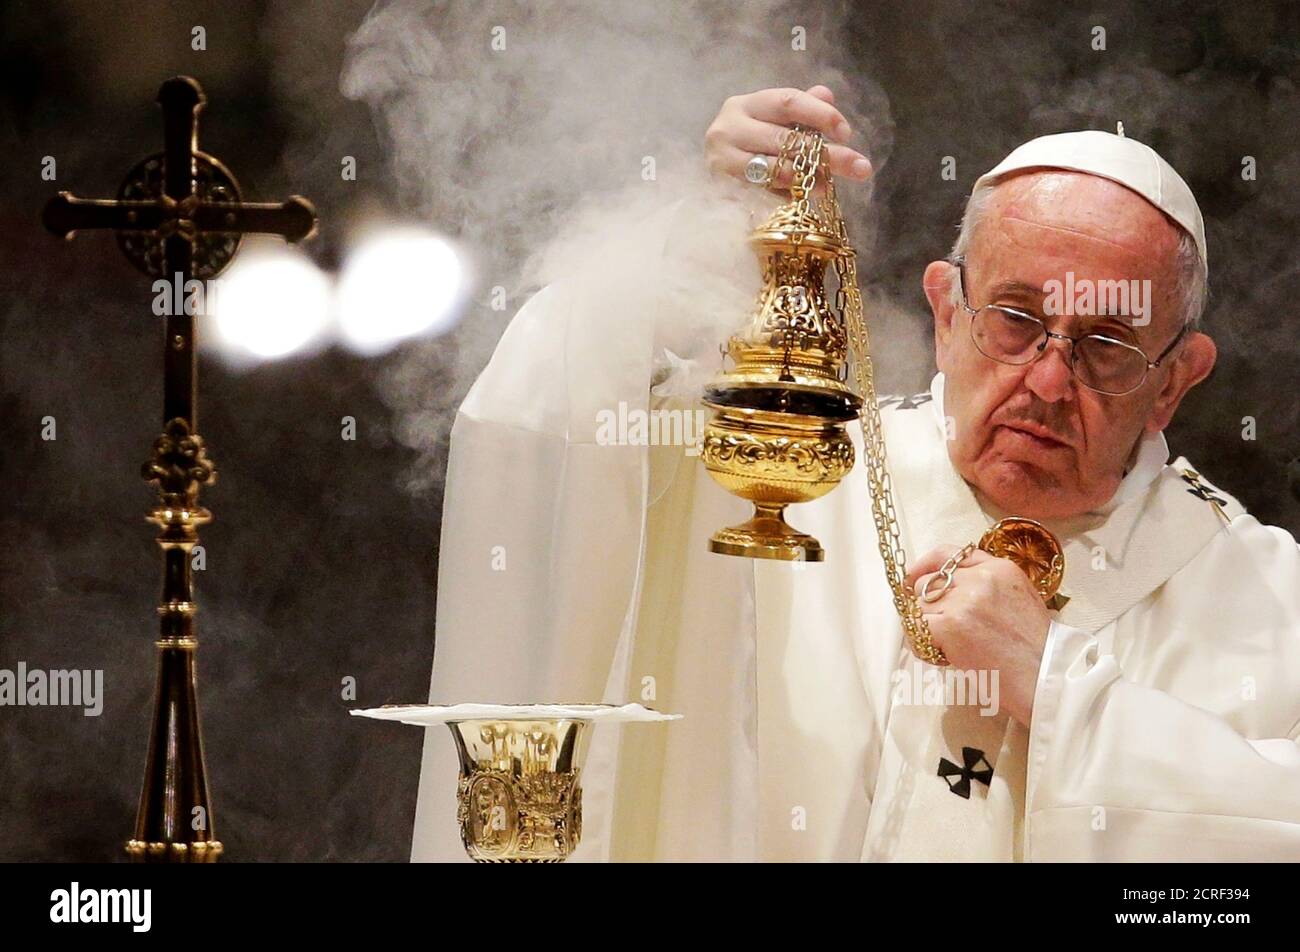 El Papa Francisco difunde incienso en el altar mientras celebra una Misa  durante el centenario de la Congregación para las Iglesias Orientales, en  la Basílica mayor de Santa María en Roma, Italia,